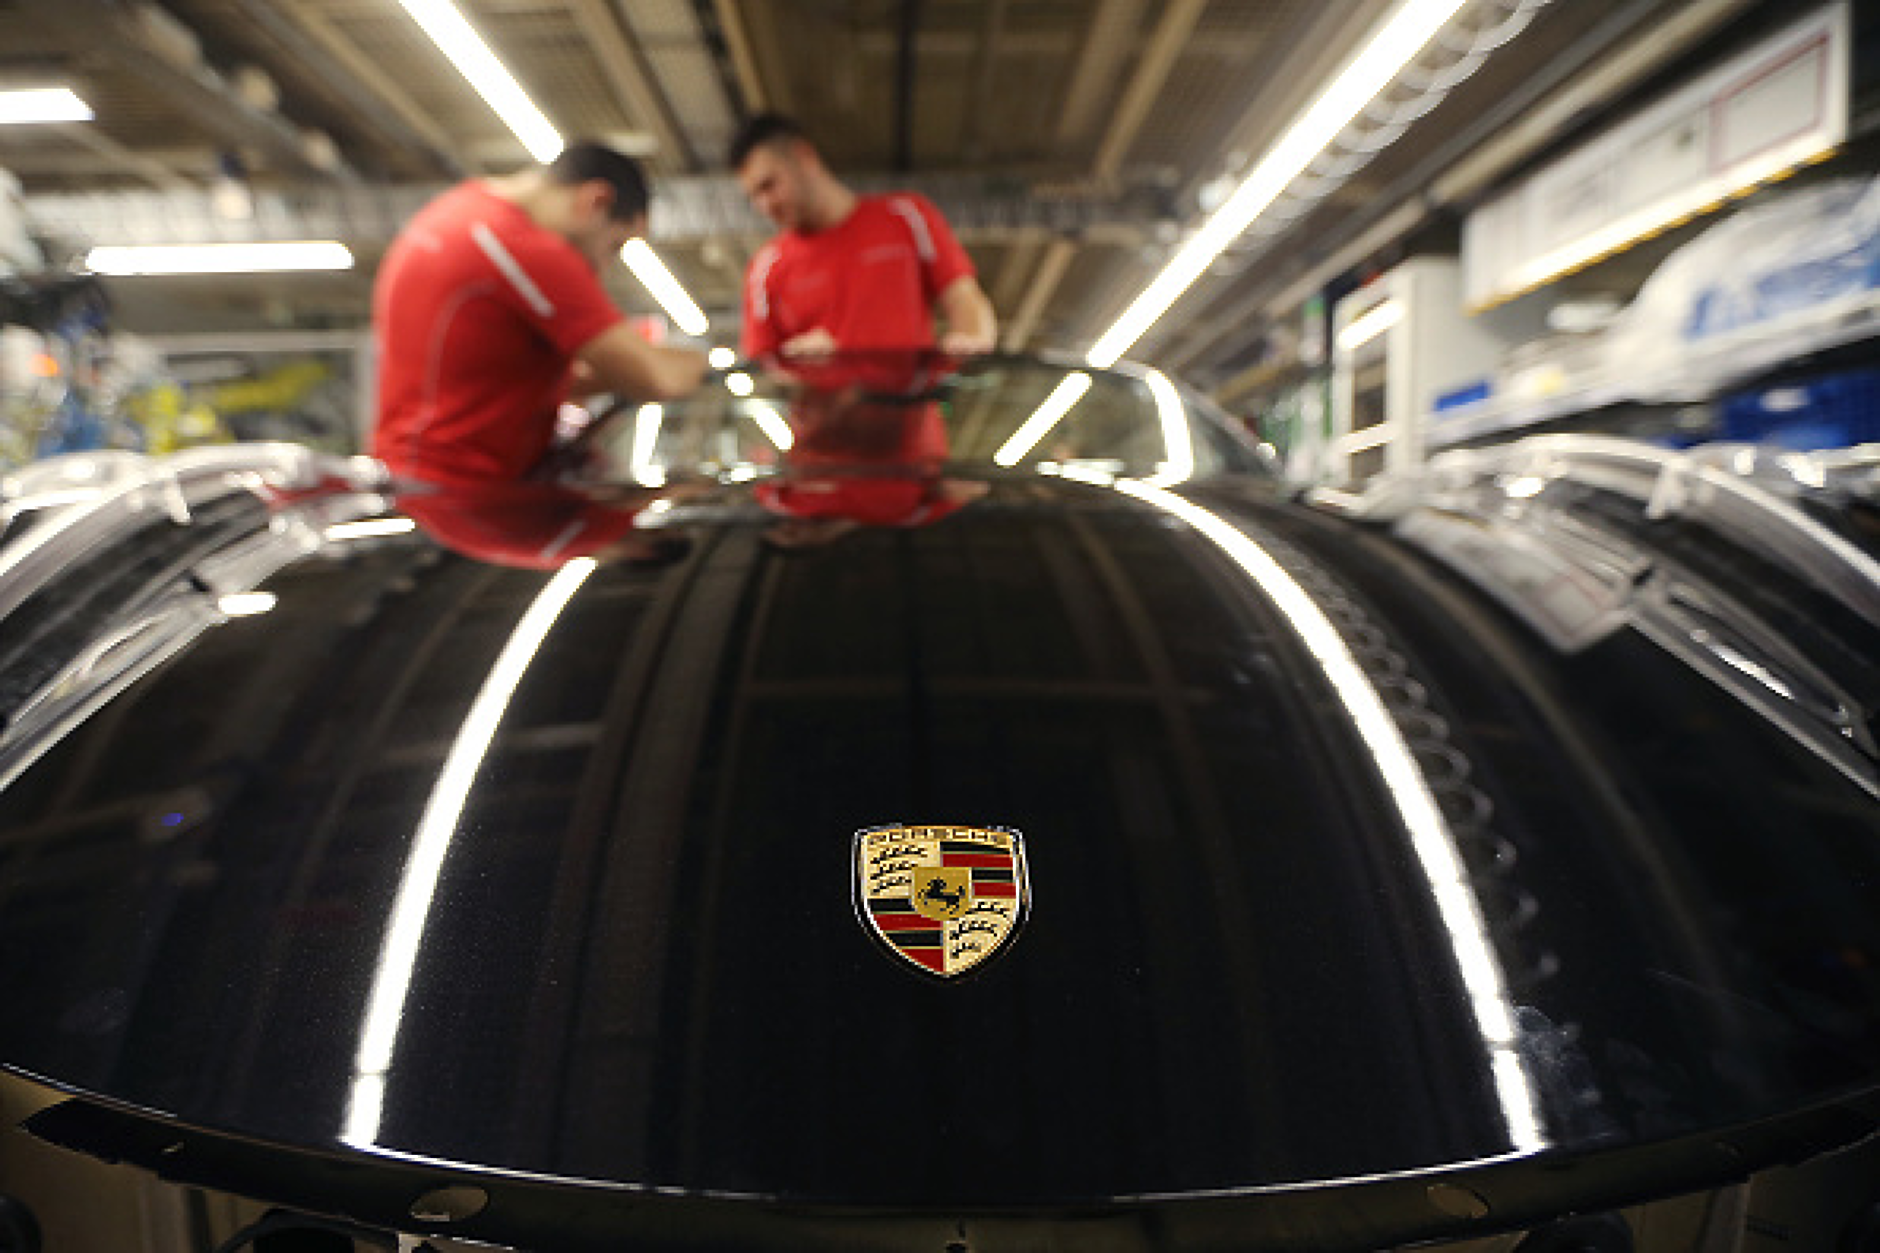 Porsche страда заради недостиг на алуминиеви сплави